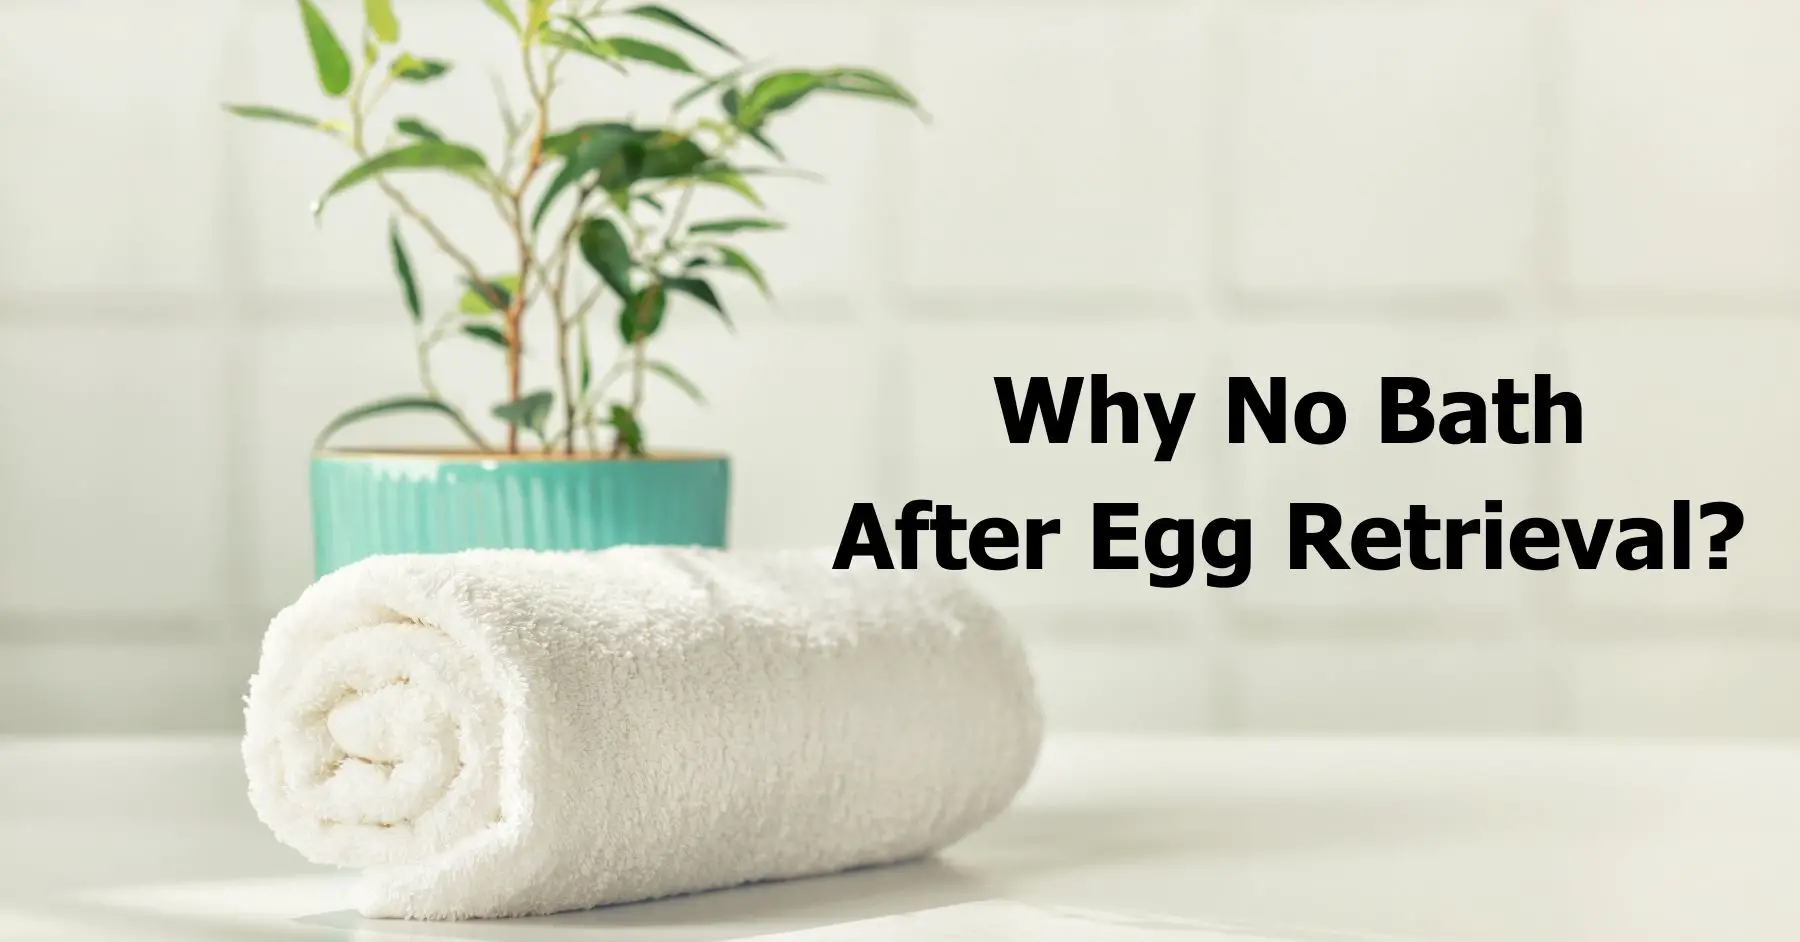 ¿Por qué no bañarse después de la extracción de óvulos? 🛁 – El consejo de una madre